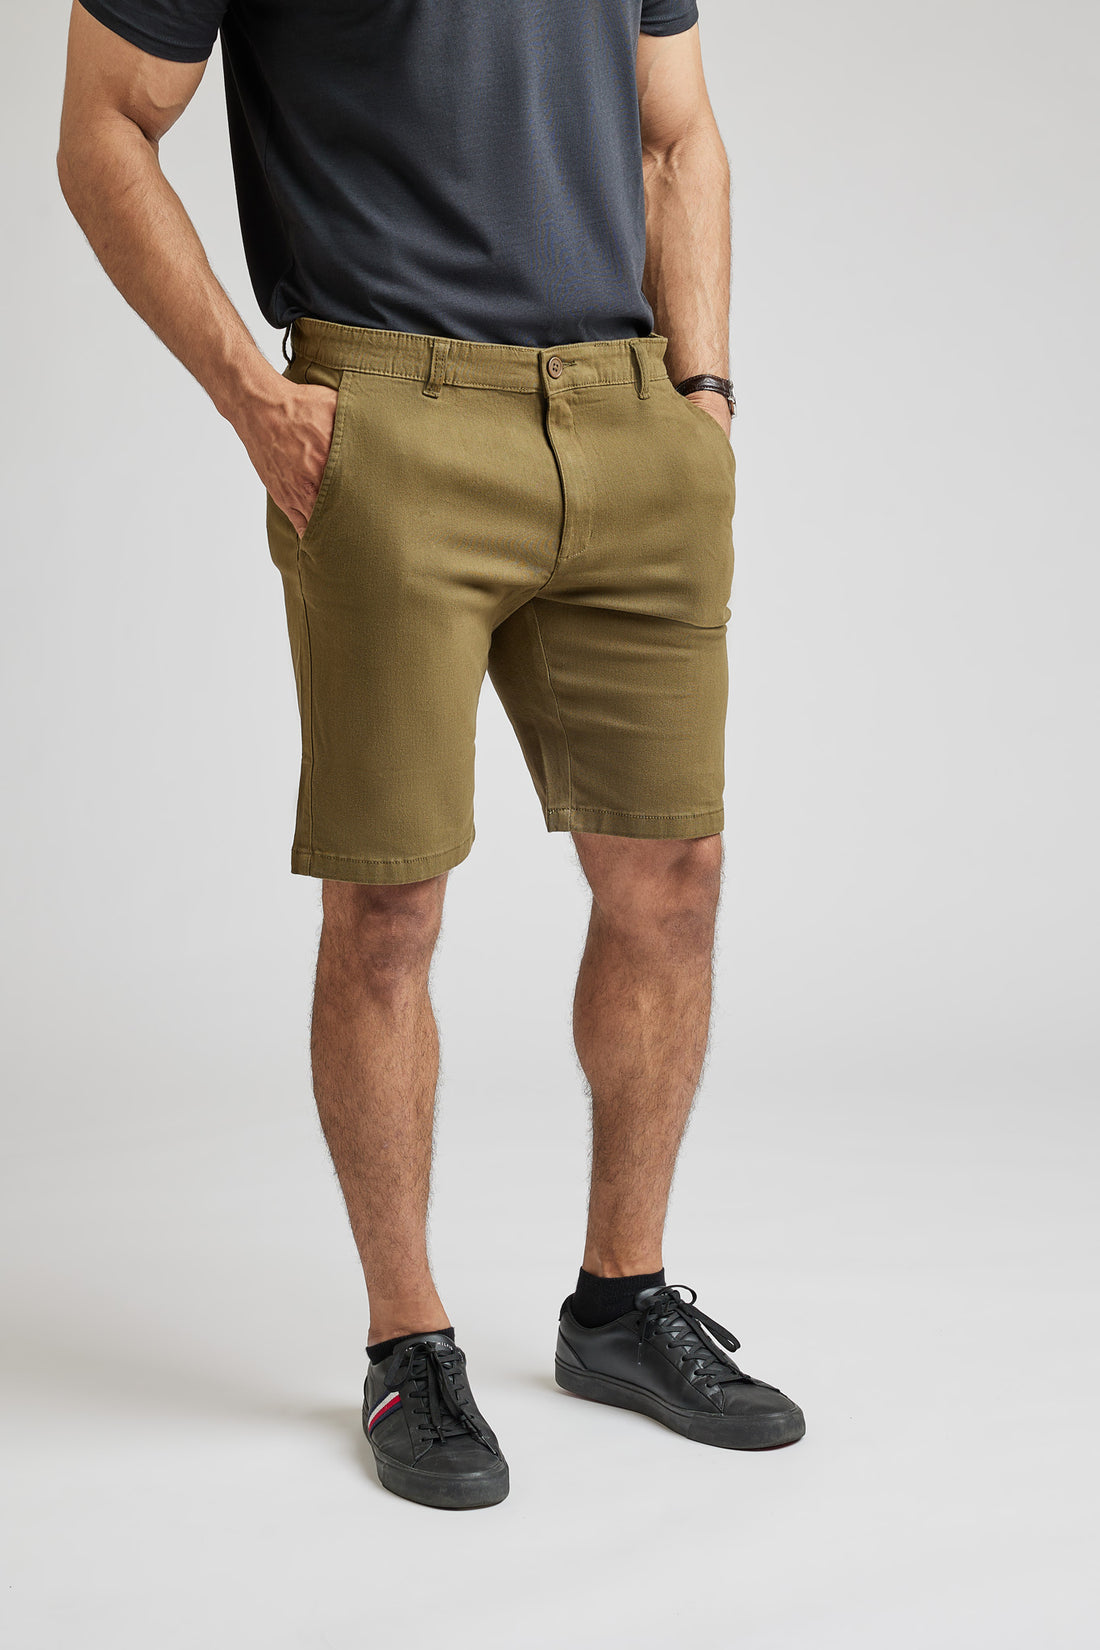 Hvorfor vælge vores Chino shorts?